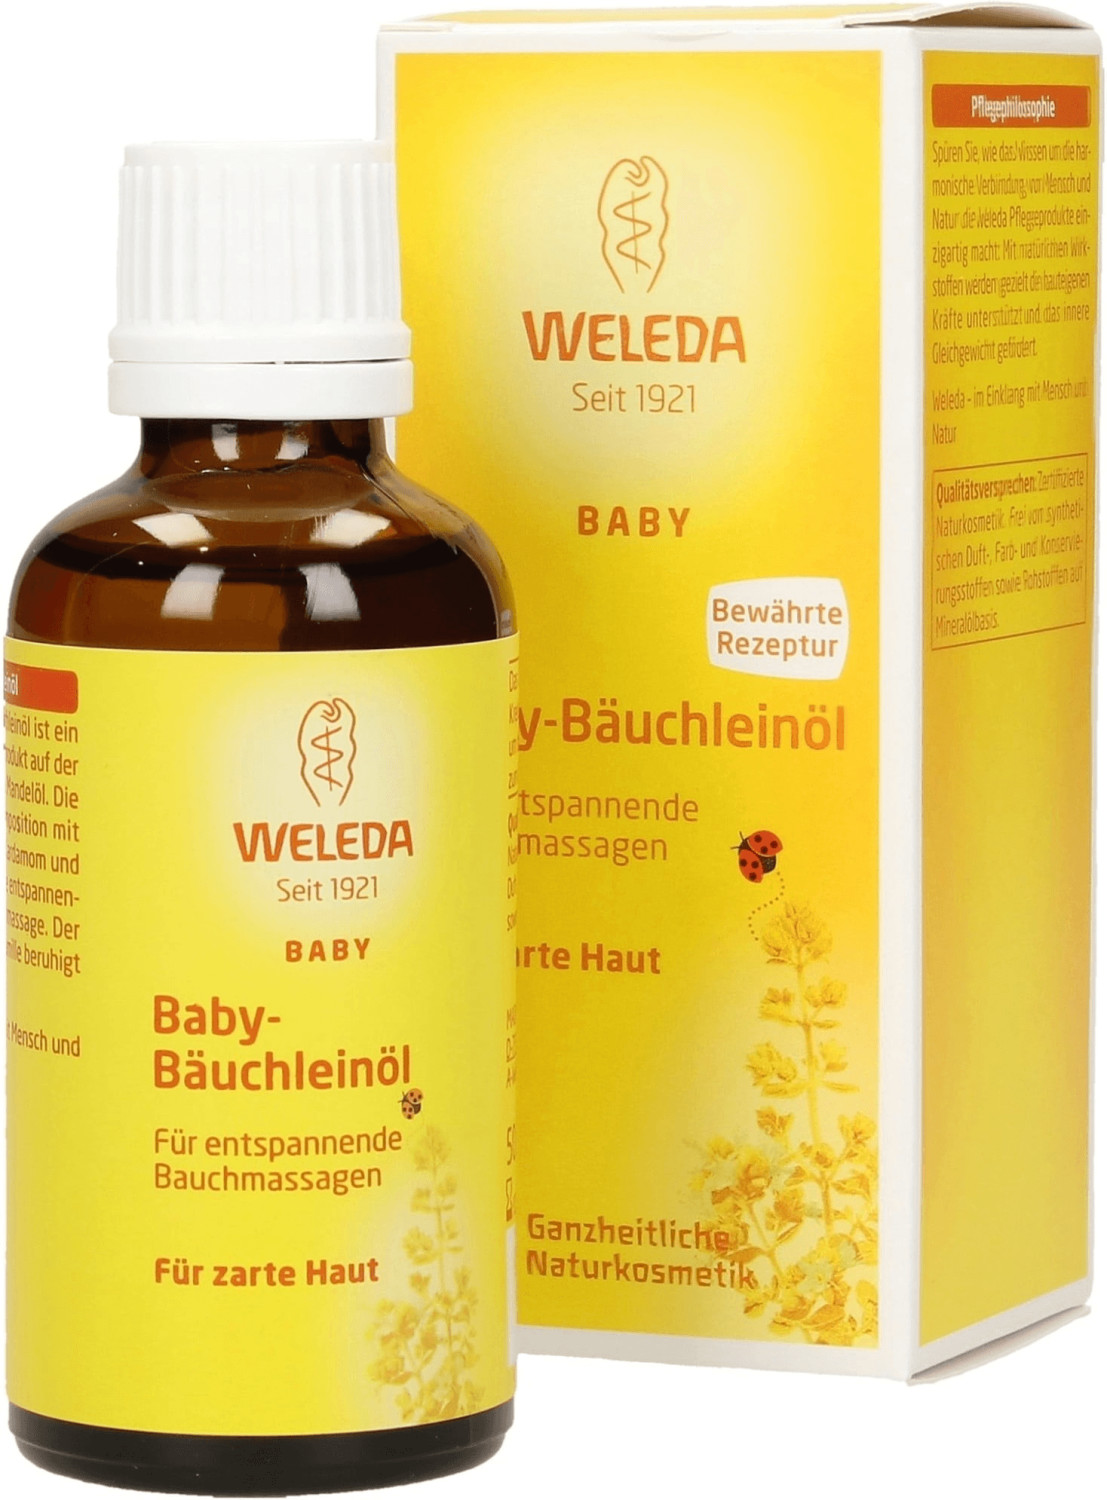 Weleda Baby-Bäuchleinöl (50 ml) ab 7,30 € | Preisvergleich bei idealo.de